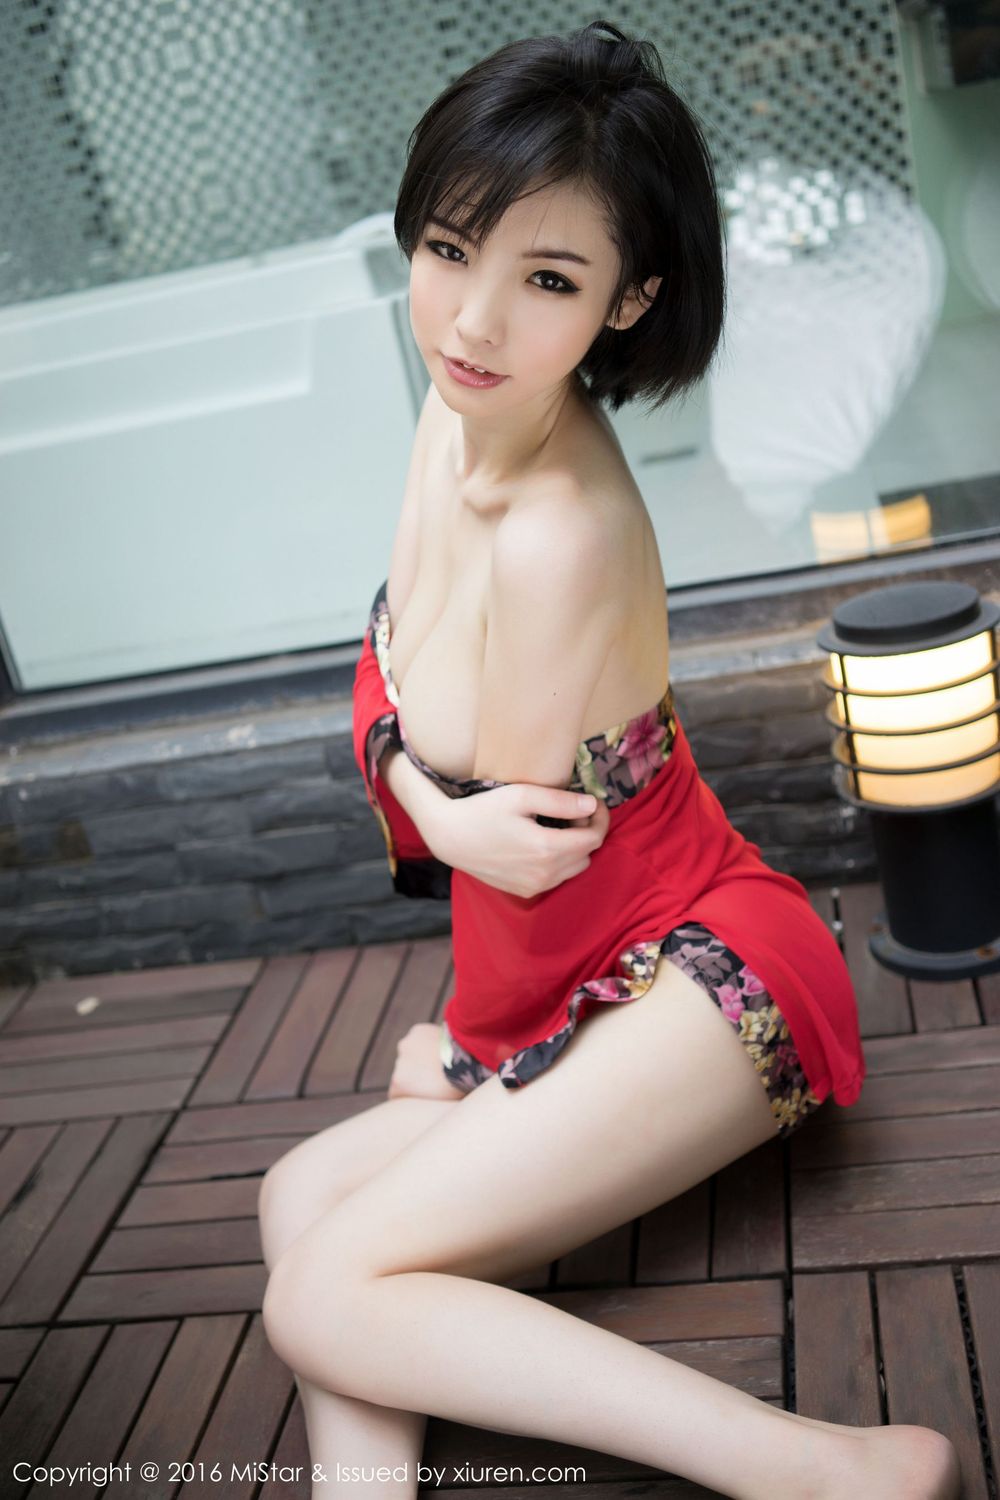 短发美女Jenny佳妮 - 傲人巨乳+修长美腿性感写真